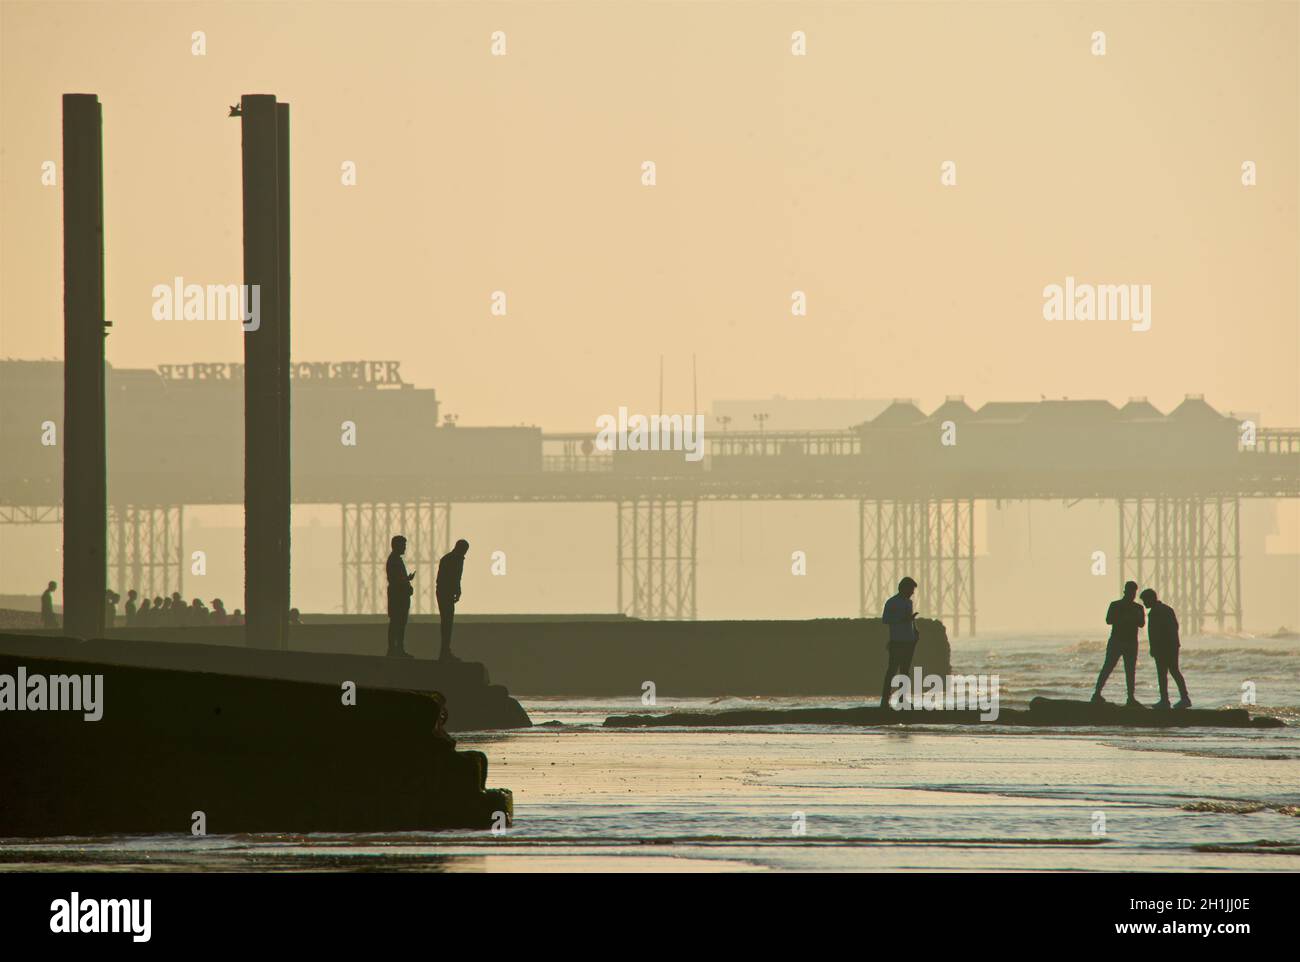 Forme silhoueted di cinque amici su un groyne che conduce al mare a bassa marea. Condivisione selfie. Brighton & Hove, East Sussex, Inghilterra, Regno Unito. Pillars Beach End del vecchio West Pier; Palace Pier dietro. Foto Stock